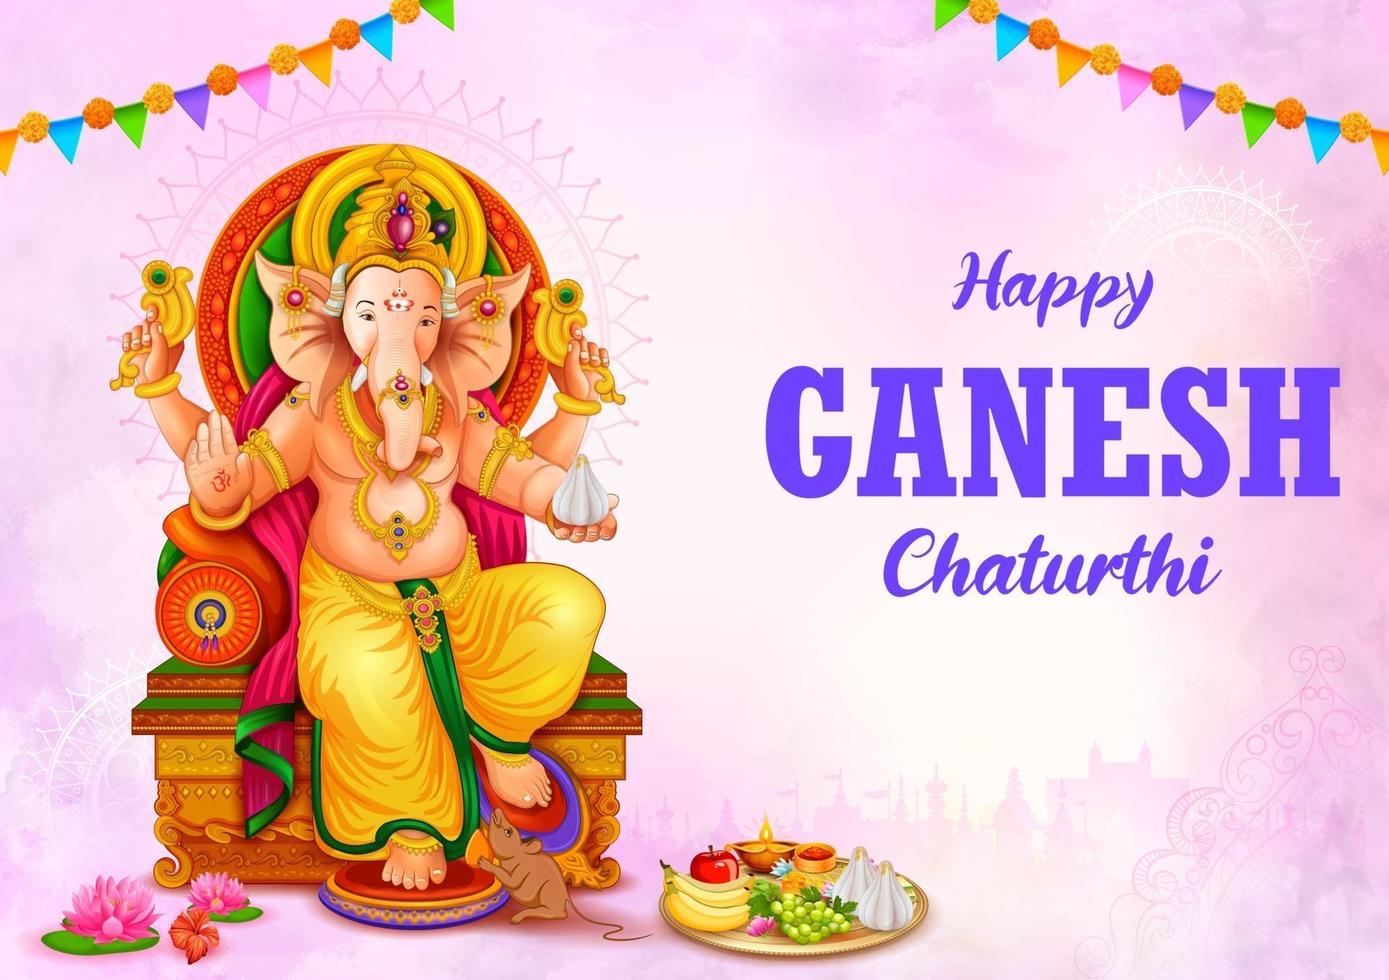 Lord Ganpati Hintergrund für das Ganesh Chaturthi Festival von Indien vektor